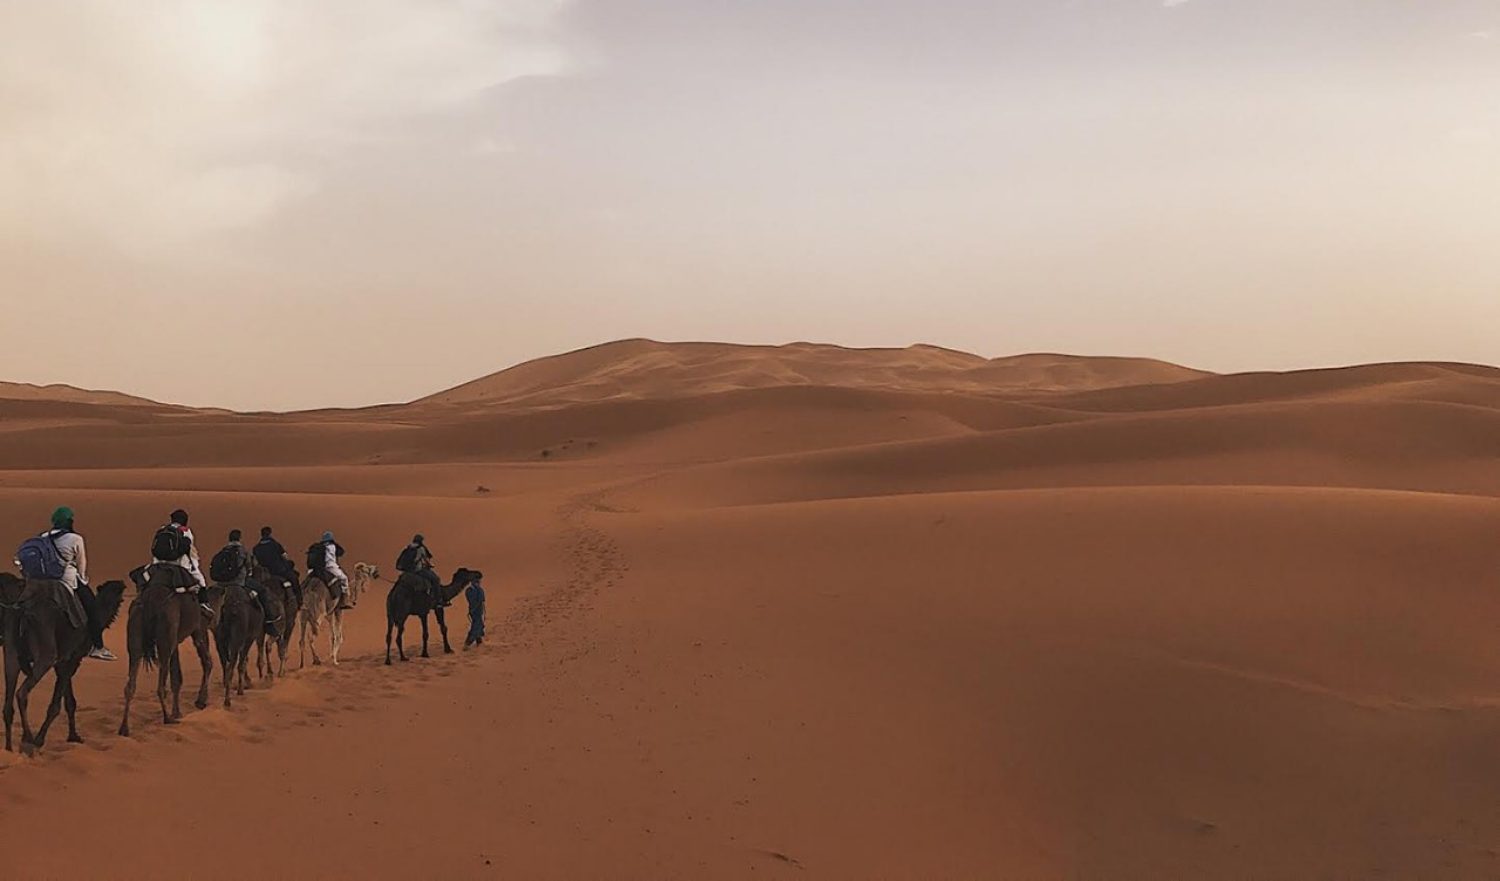 Traveling in desert